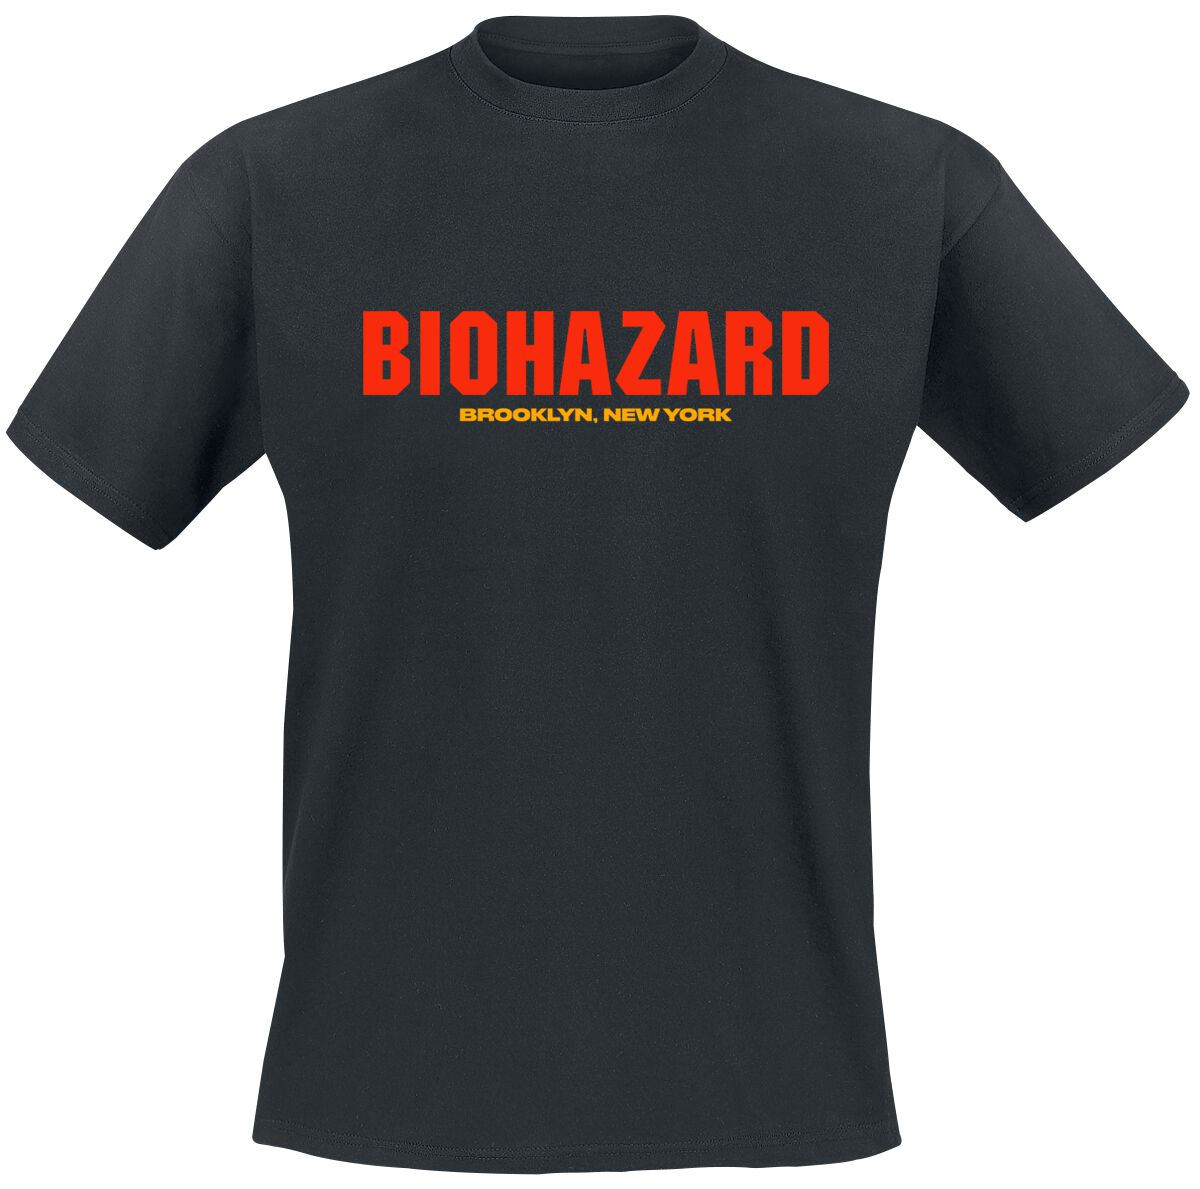 Biohazard T-Shirt - Urban discipline - S bis 4XL - für Männer - Größe 3XL - schwarz  - Lizenziertes Merchandise!